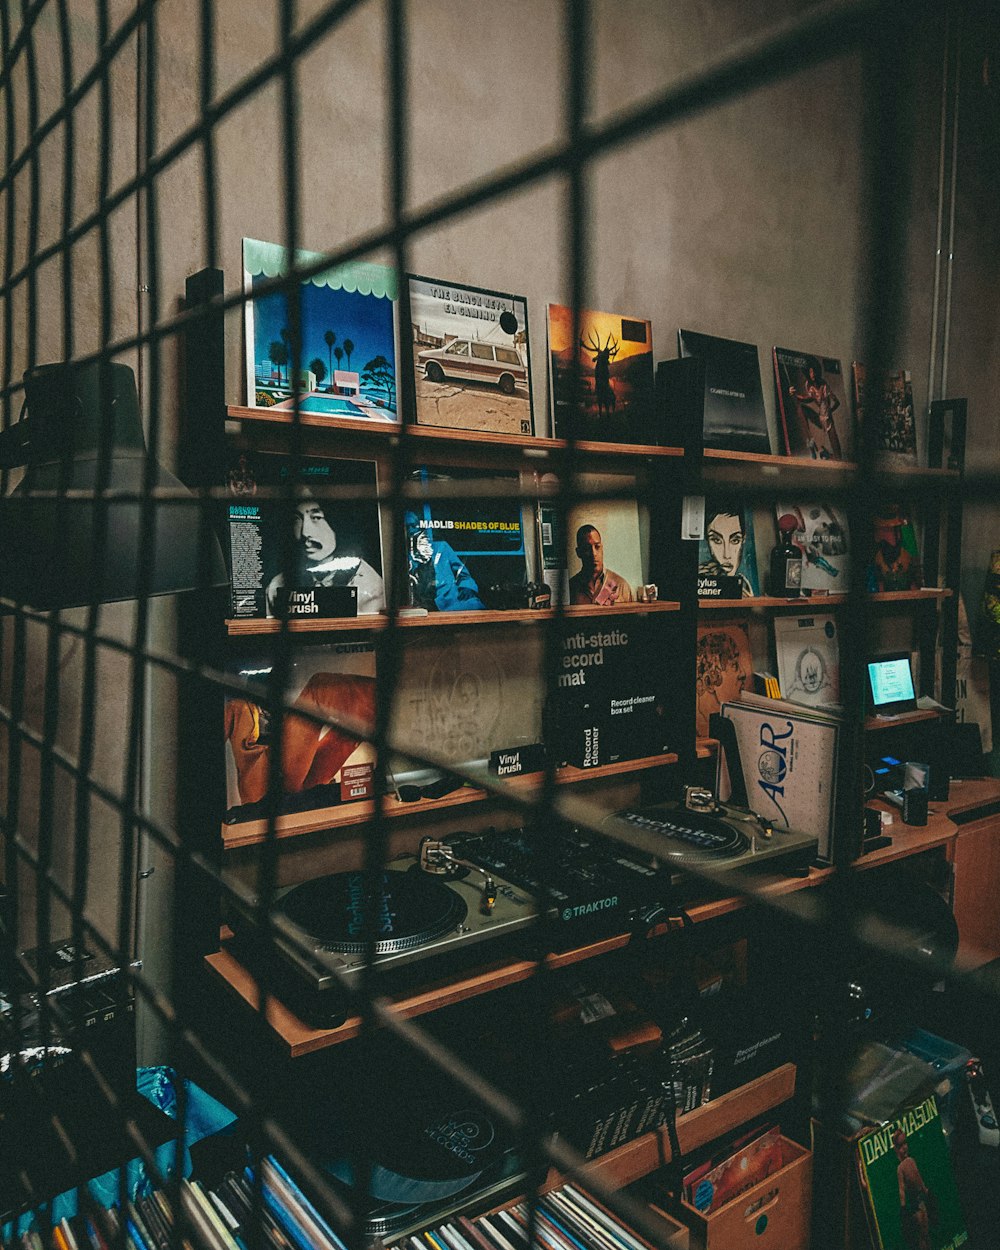 Ein Raum mit vielen Büchern und CDs im Regal